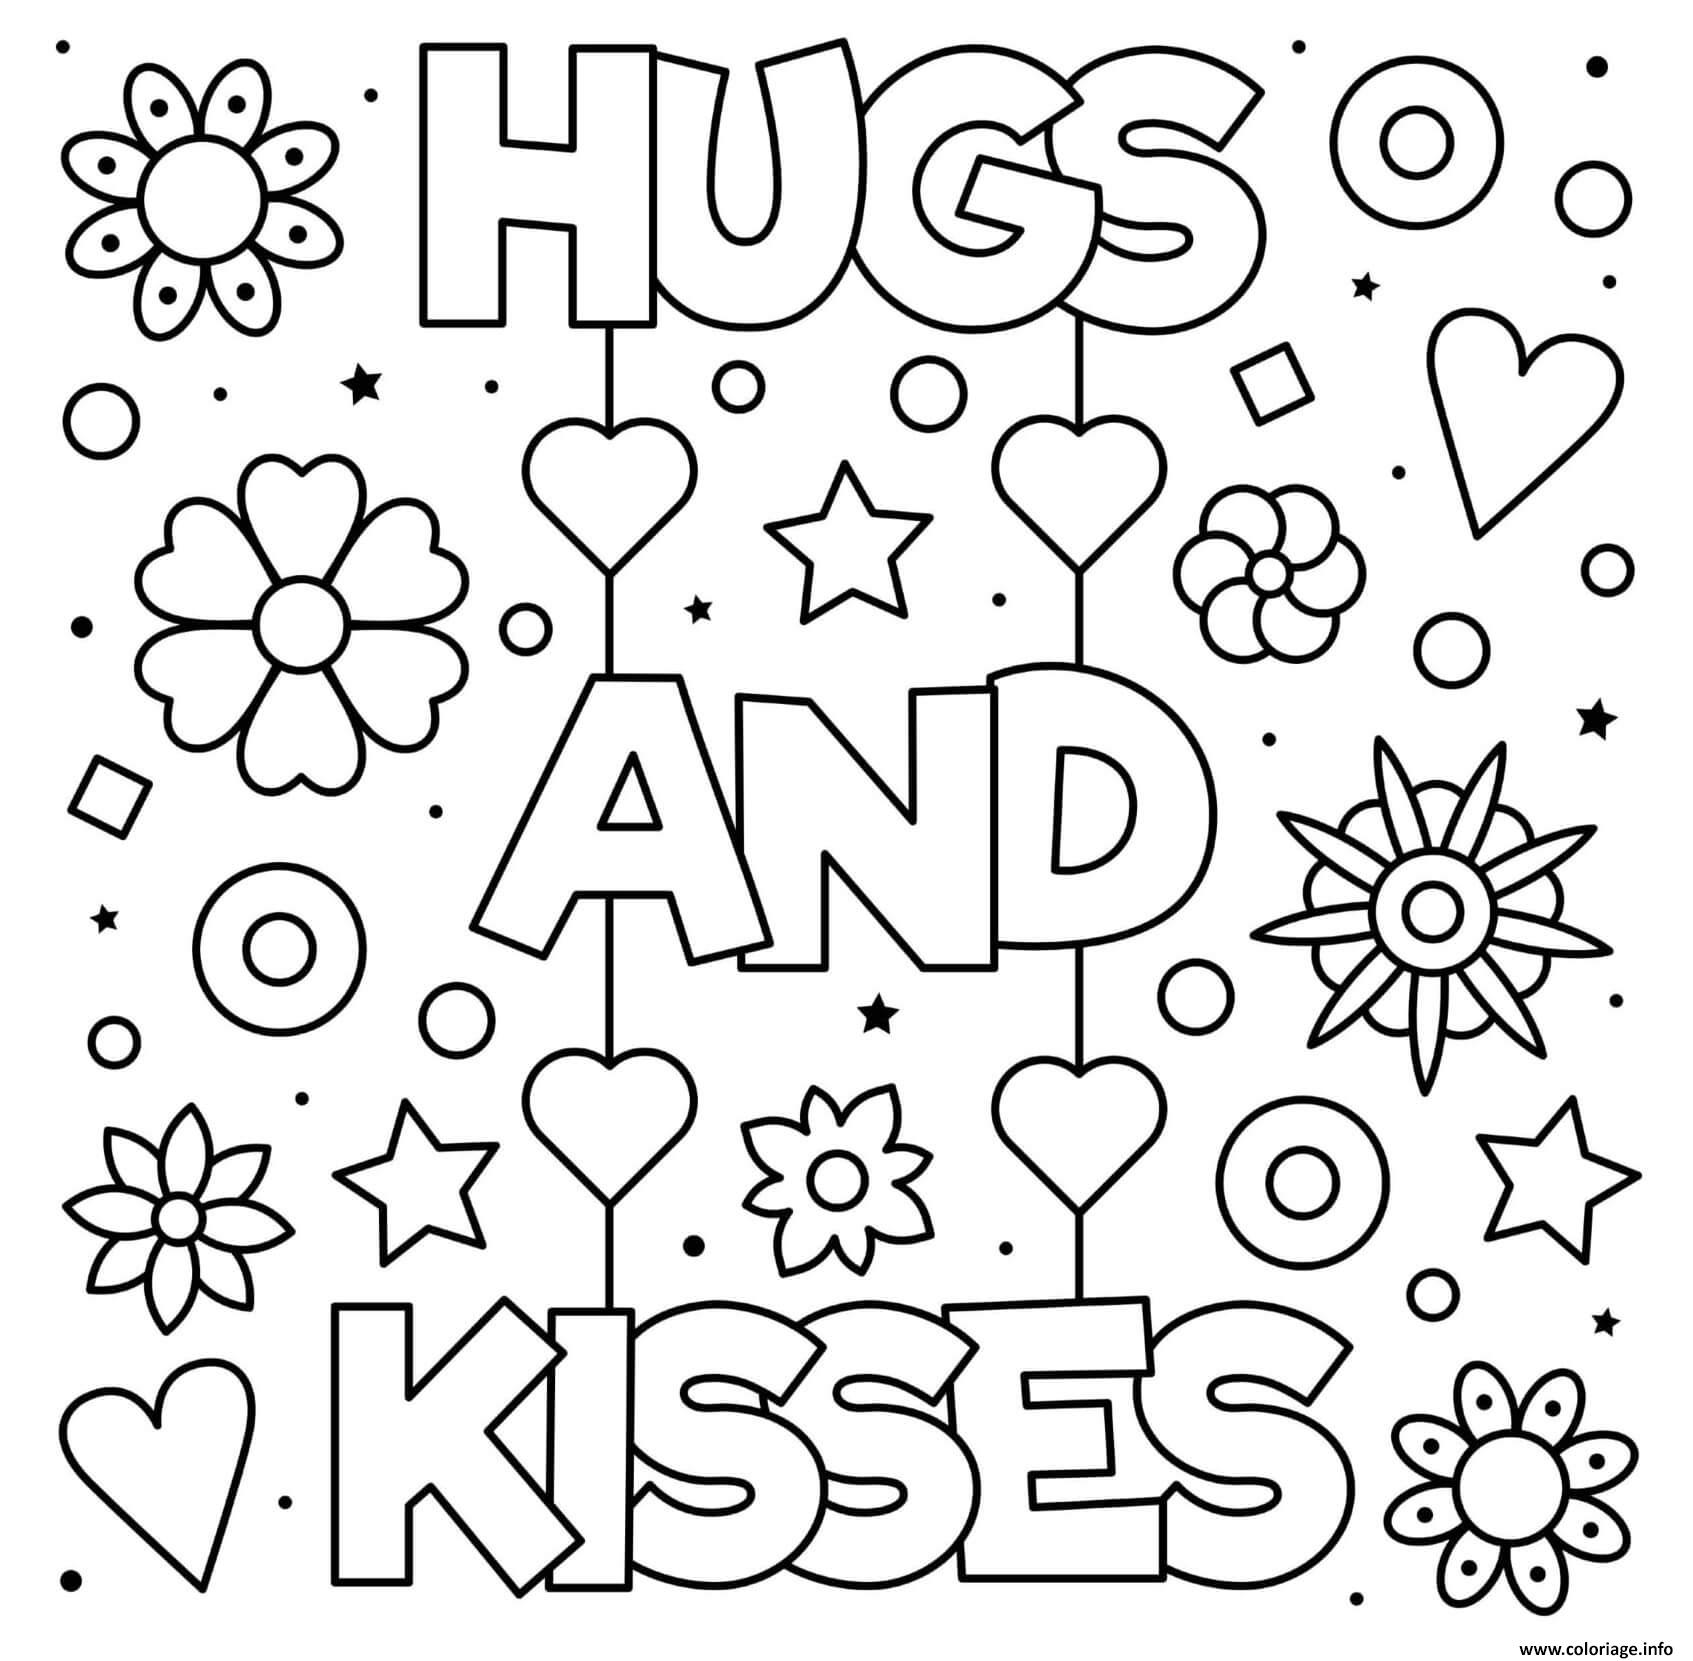 Dessin fete des meres hugs and kisses fleurs coeurs Coloriage Gratuit à Imprimer